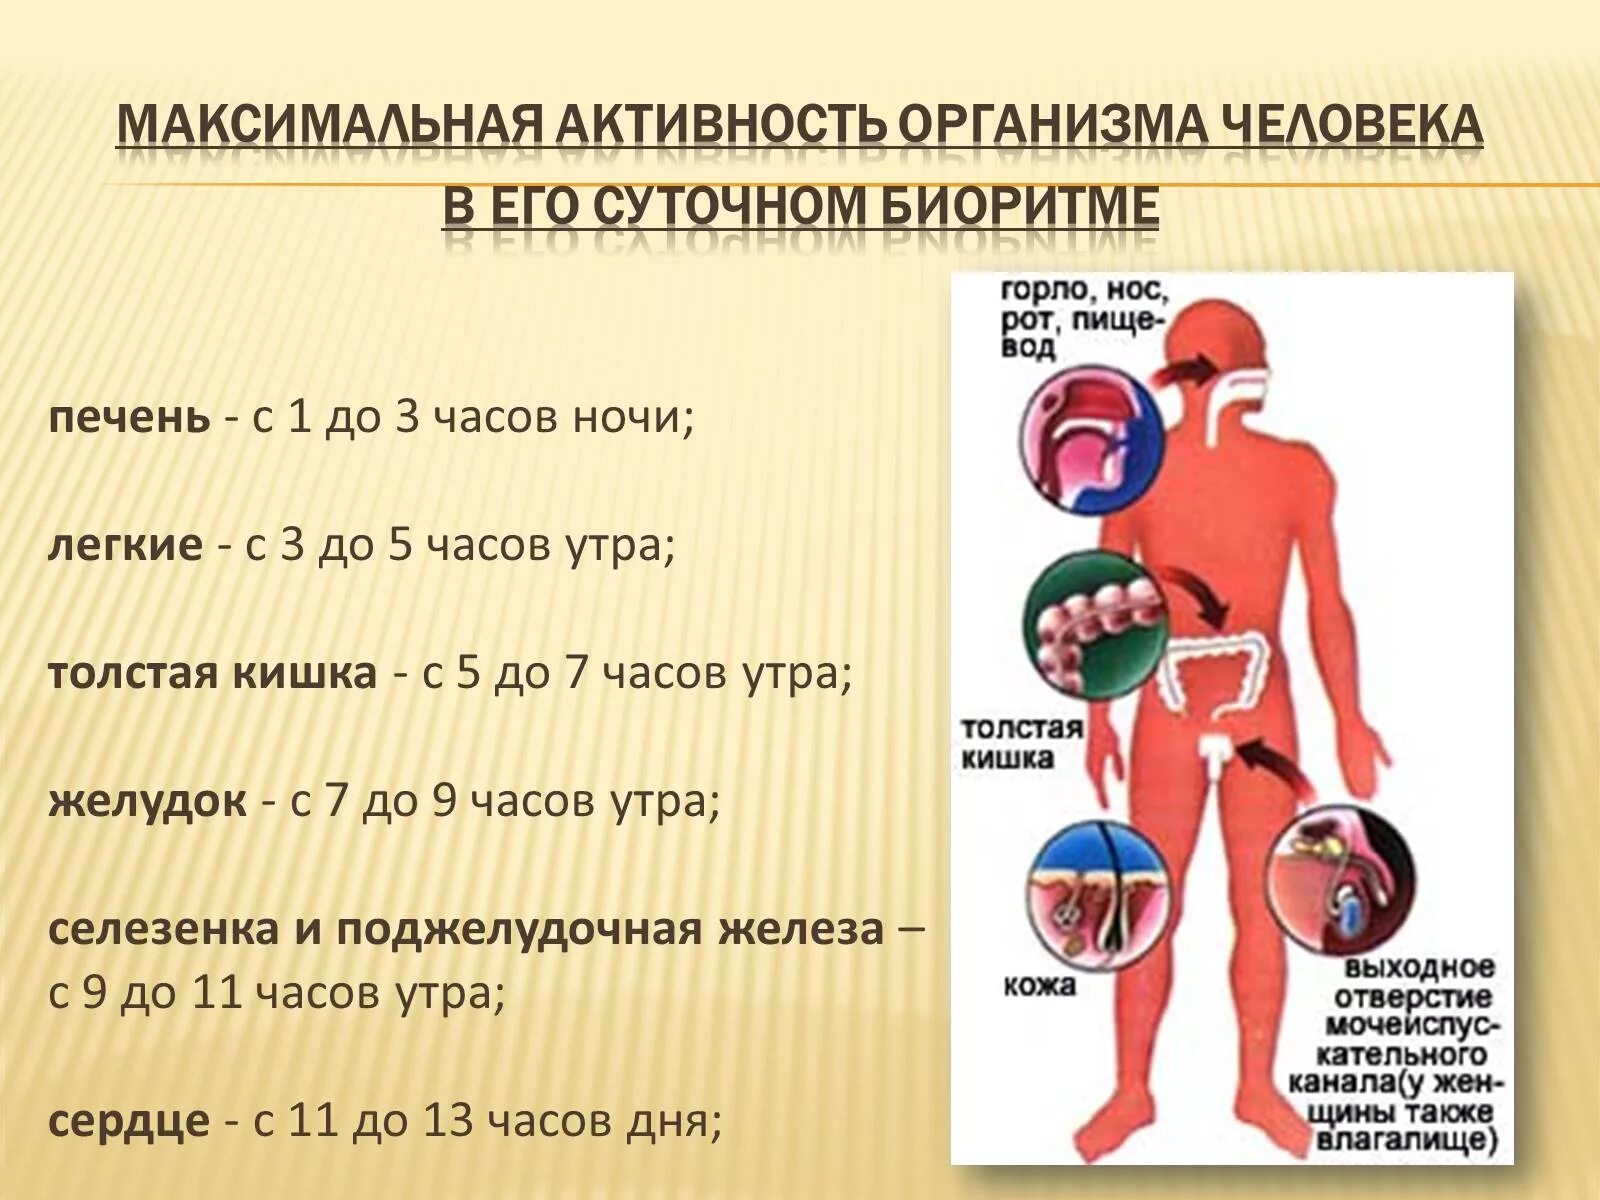 Биоритмы человека. Физиологические ритмы человека. Биоритм организма человека. Суточные биоритмы органов человека.